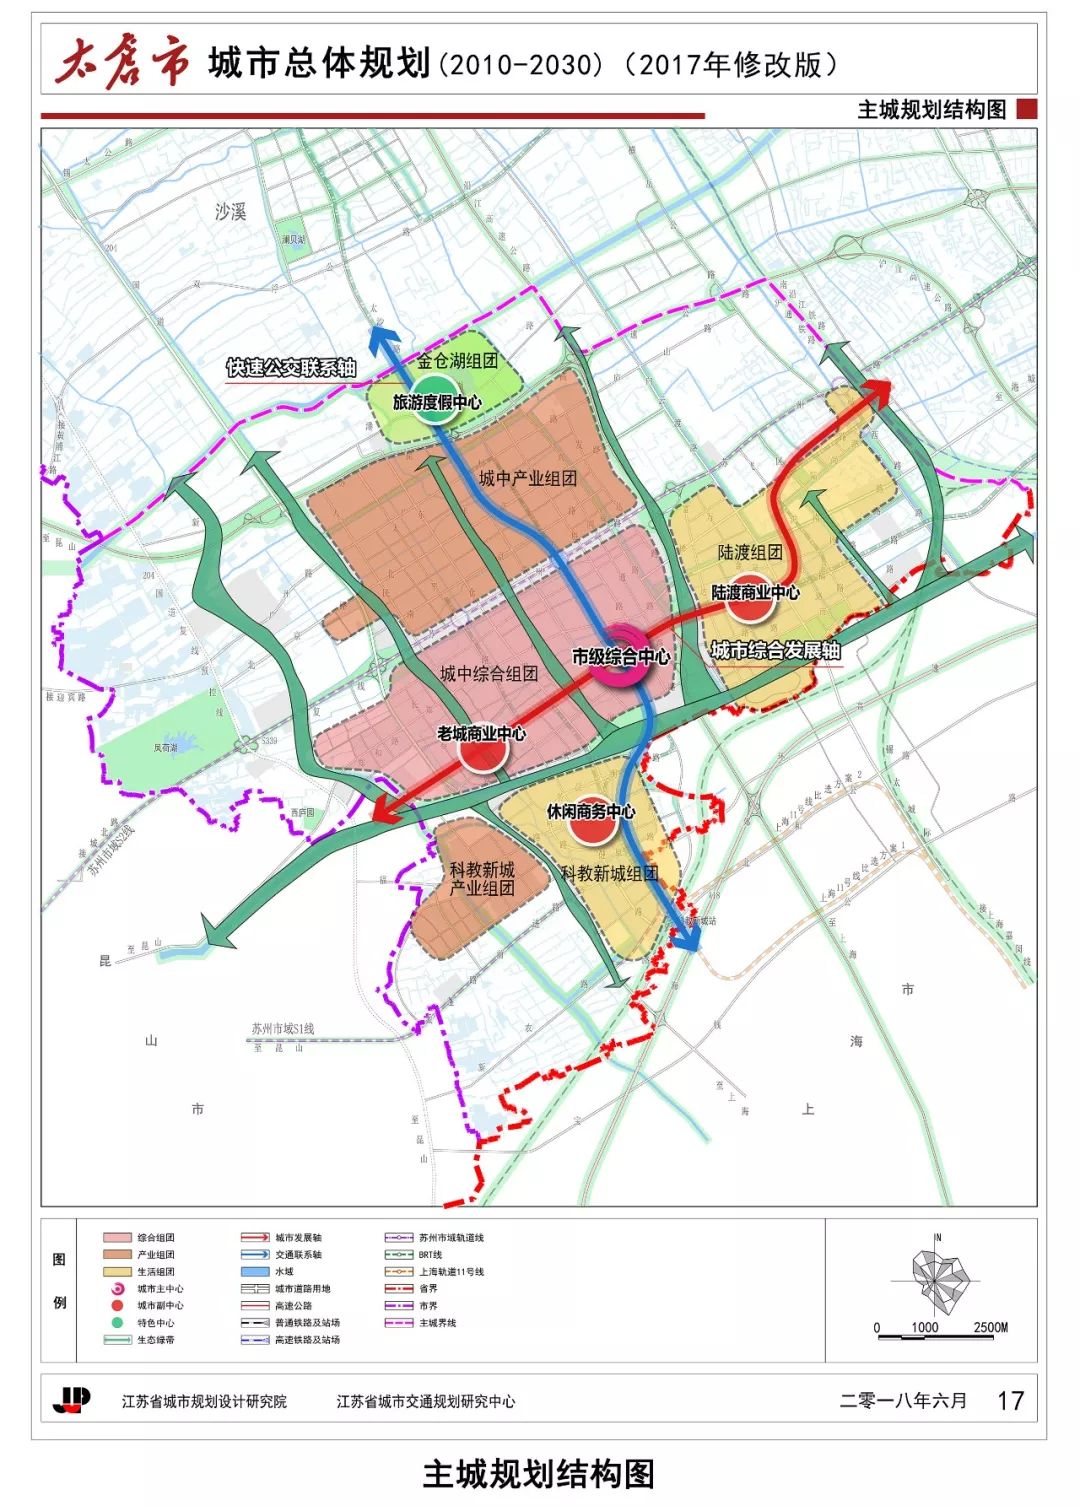 最新!太仓市城市总体规划(2010-2030)批后公示